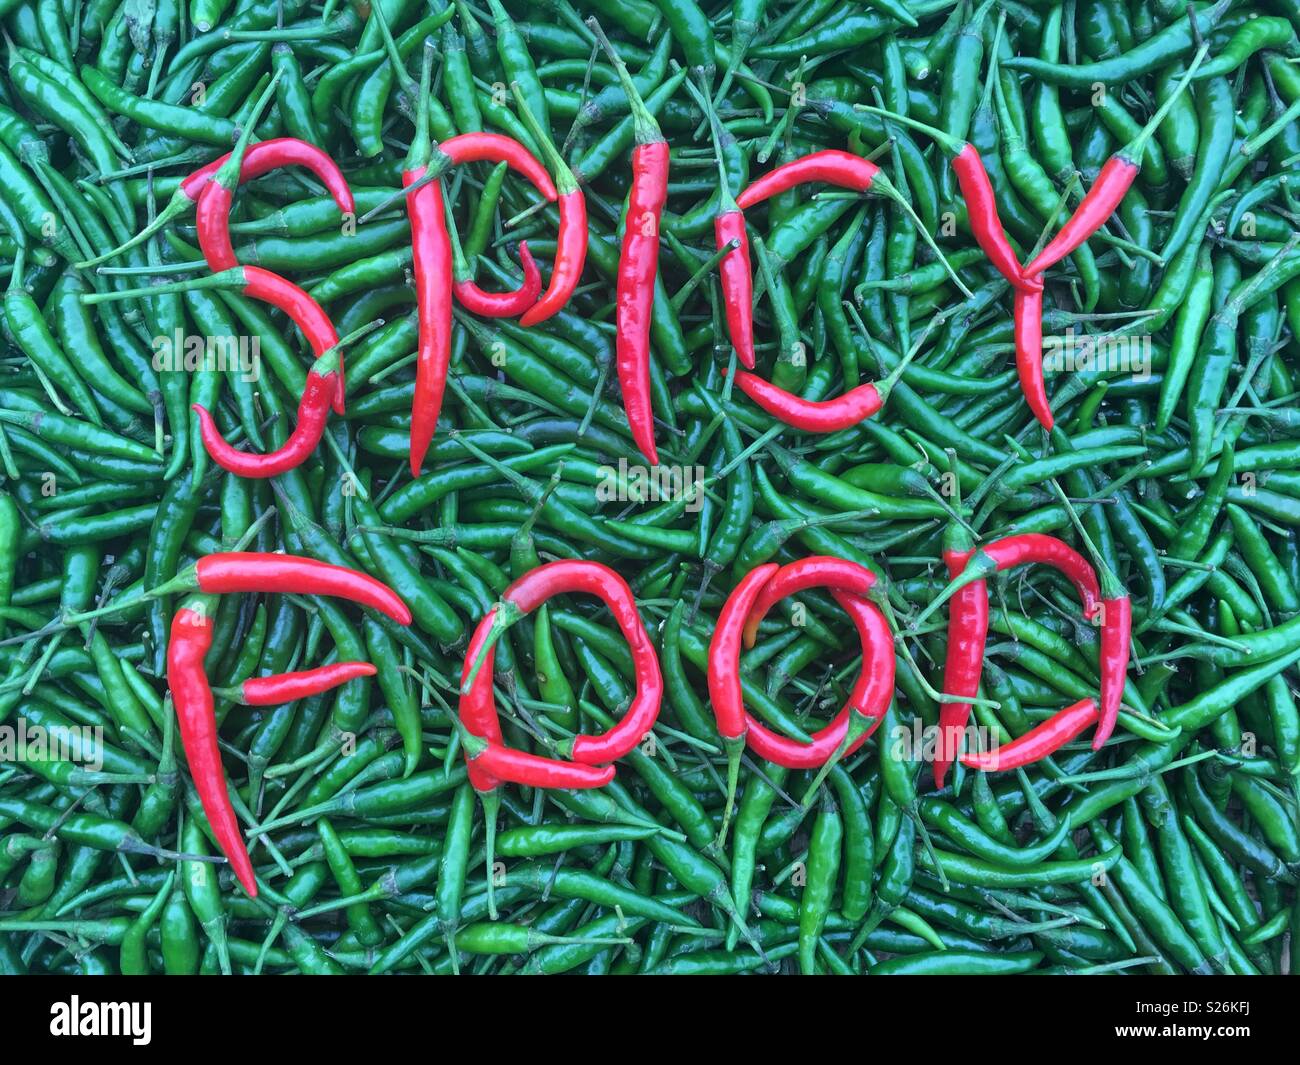 Die Wörter würzig essen' in rote und grüne Chilischoten geschrieben Stockfoto